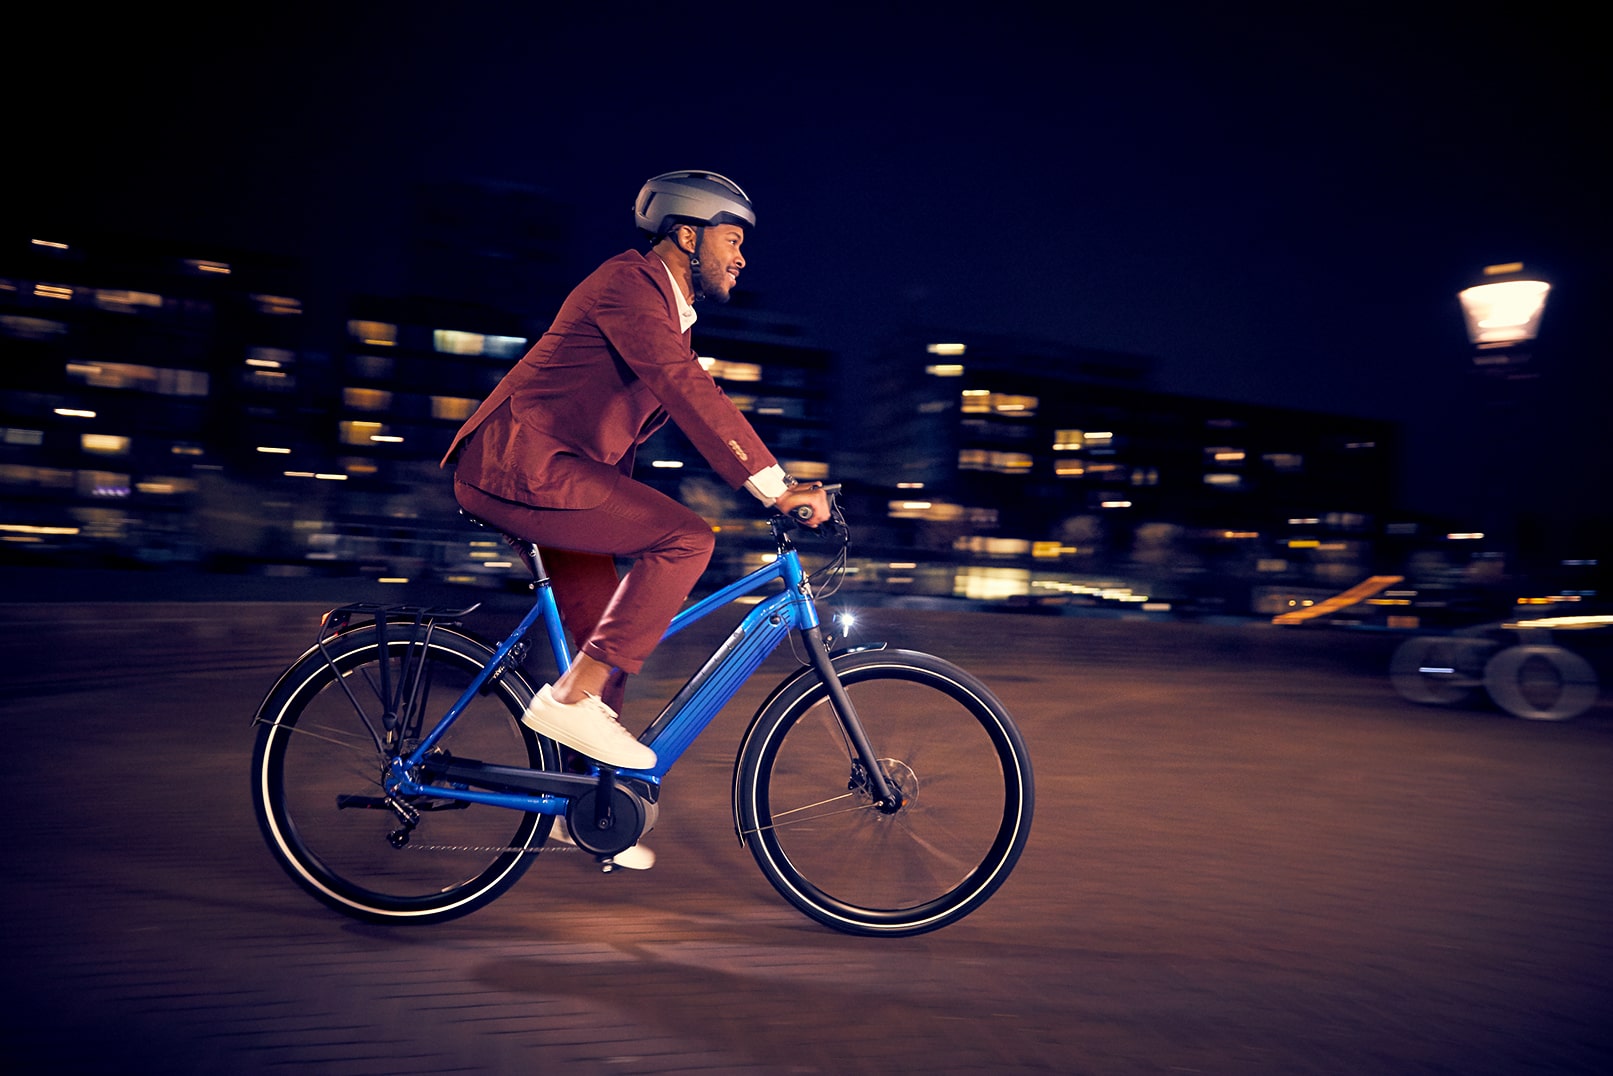 Homme à vélo | Faire du vélo dans l’obscurité